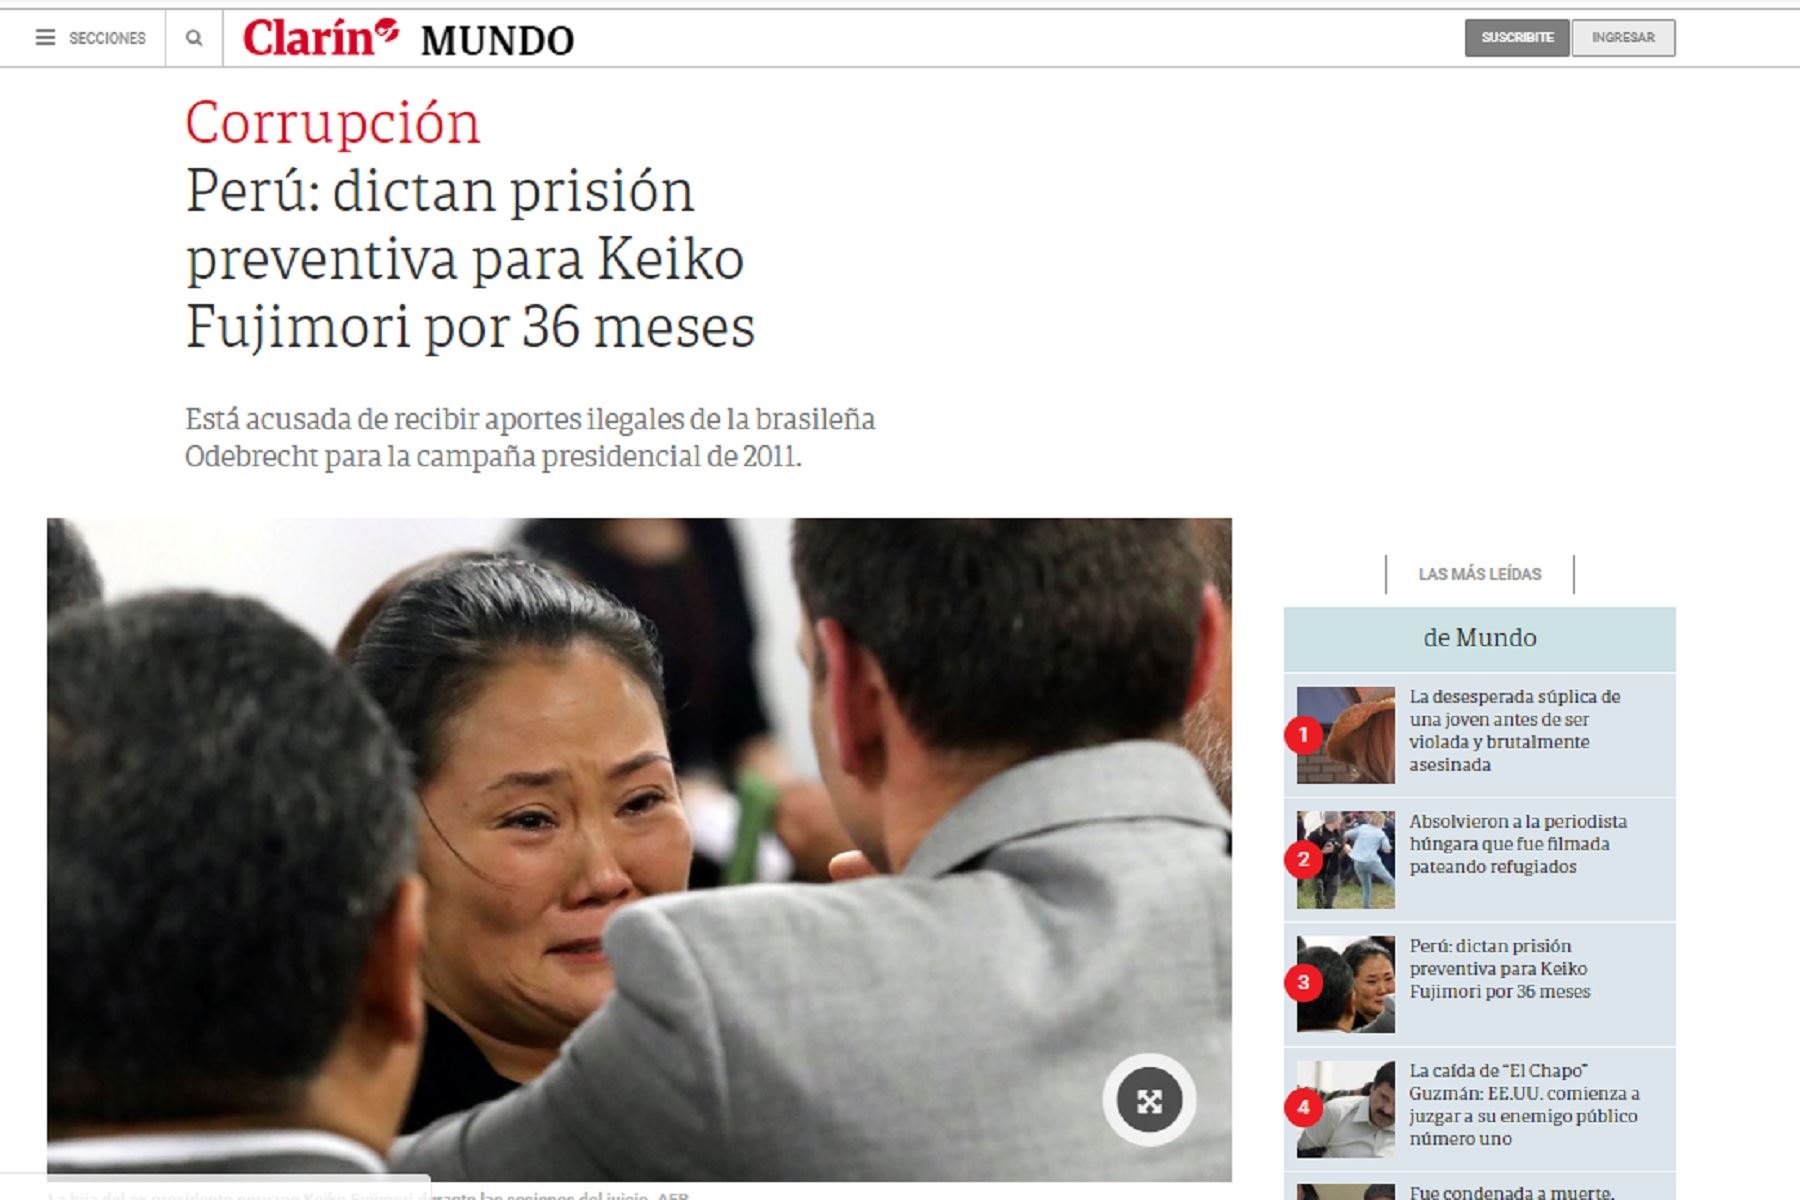 Medios internacionales destacan la medida de prisión preventiva contra keiko Fujimori.